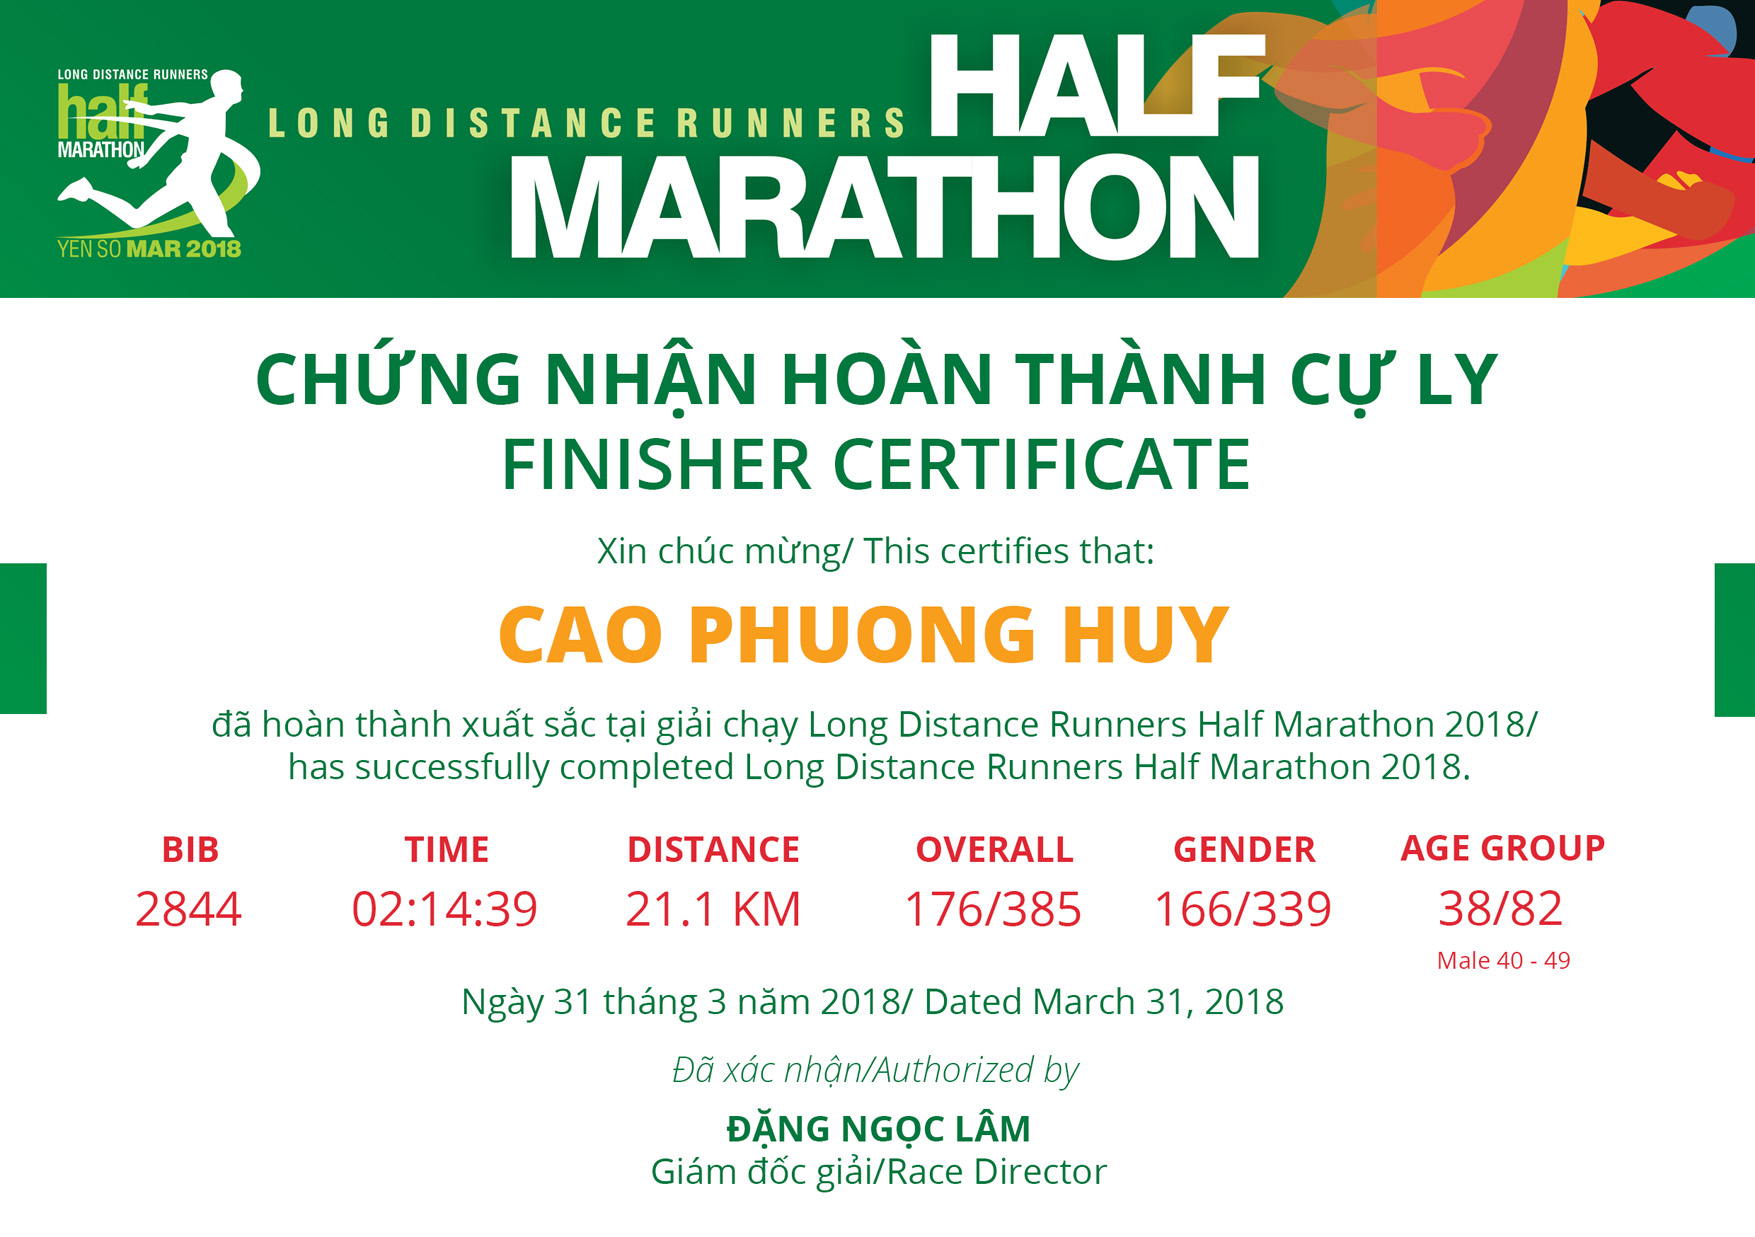 2844 - Cao Phuong Huy